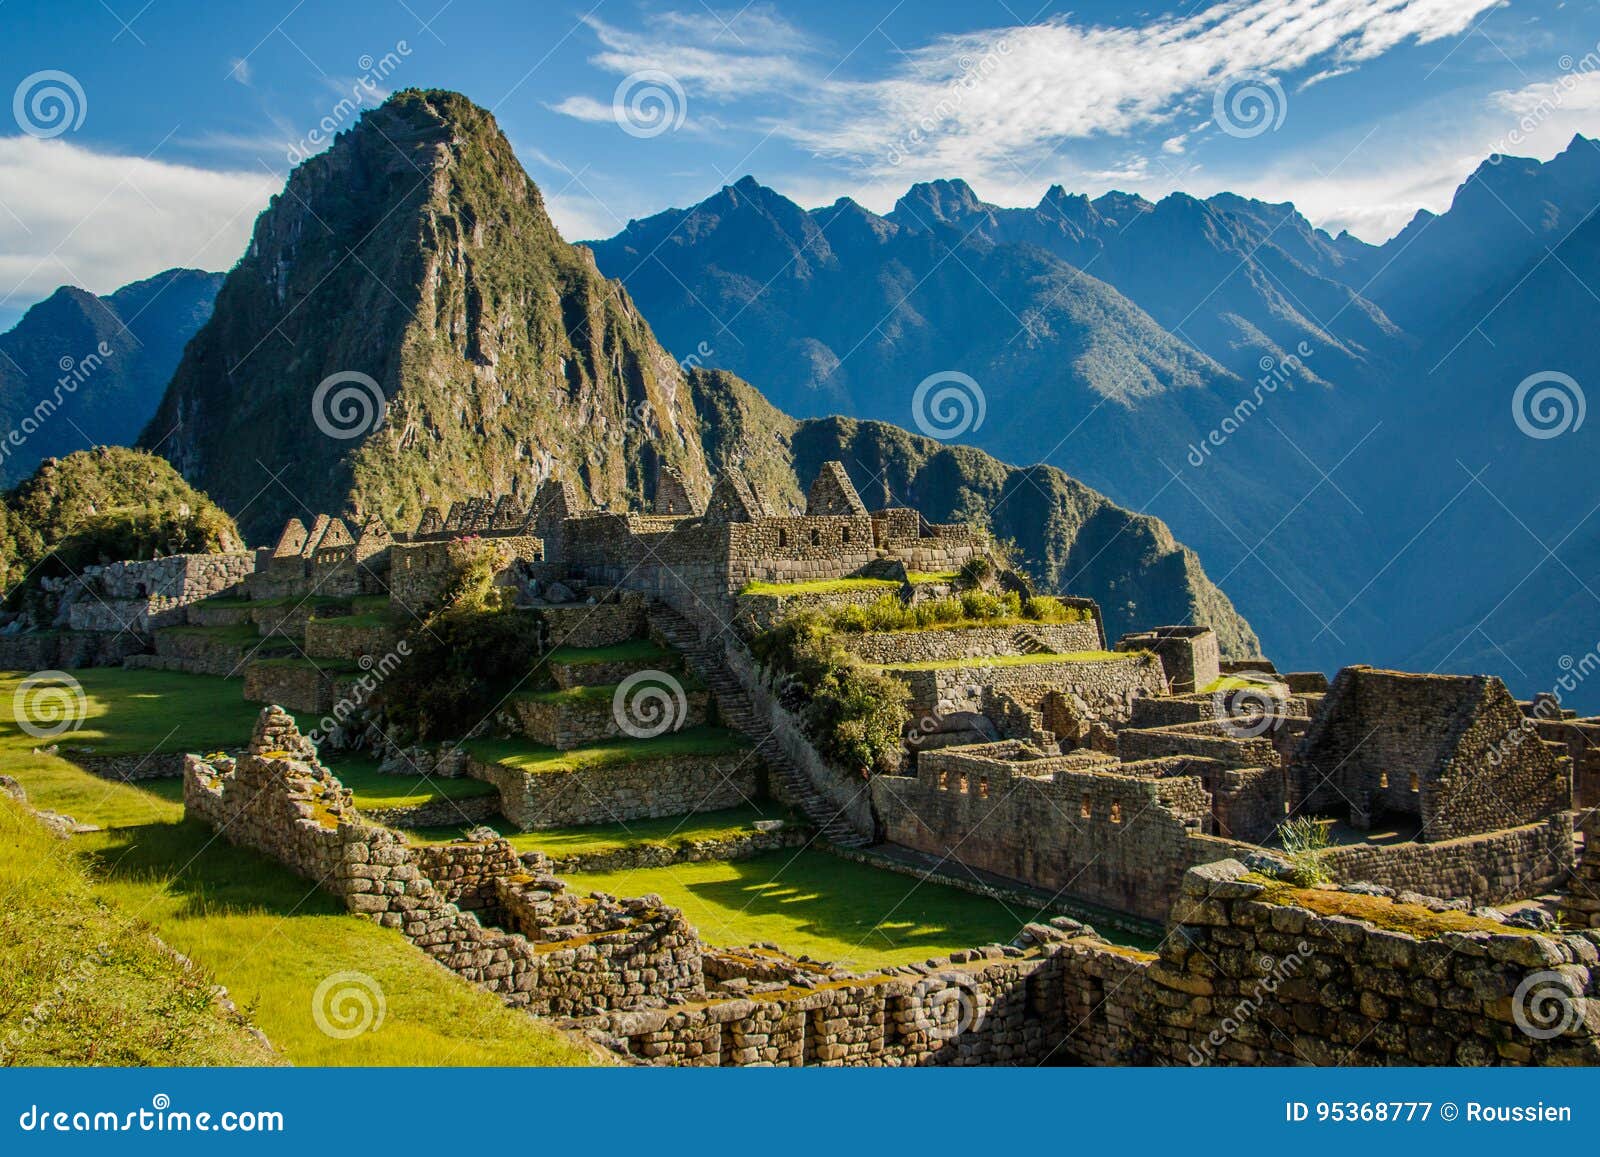 famous machu picchu ruins, near cuzco, peru